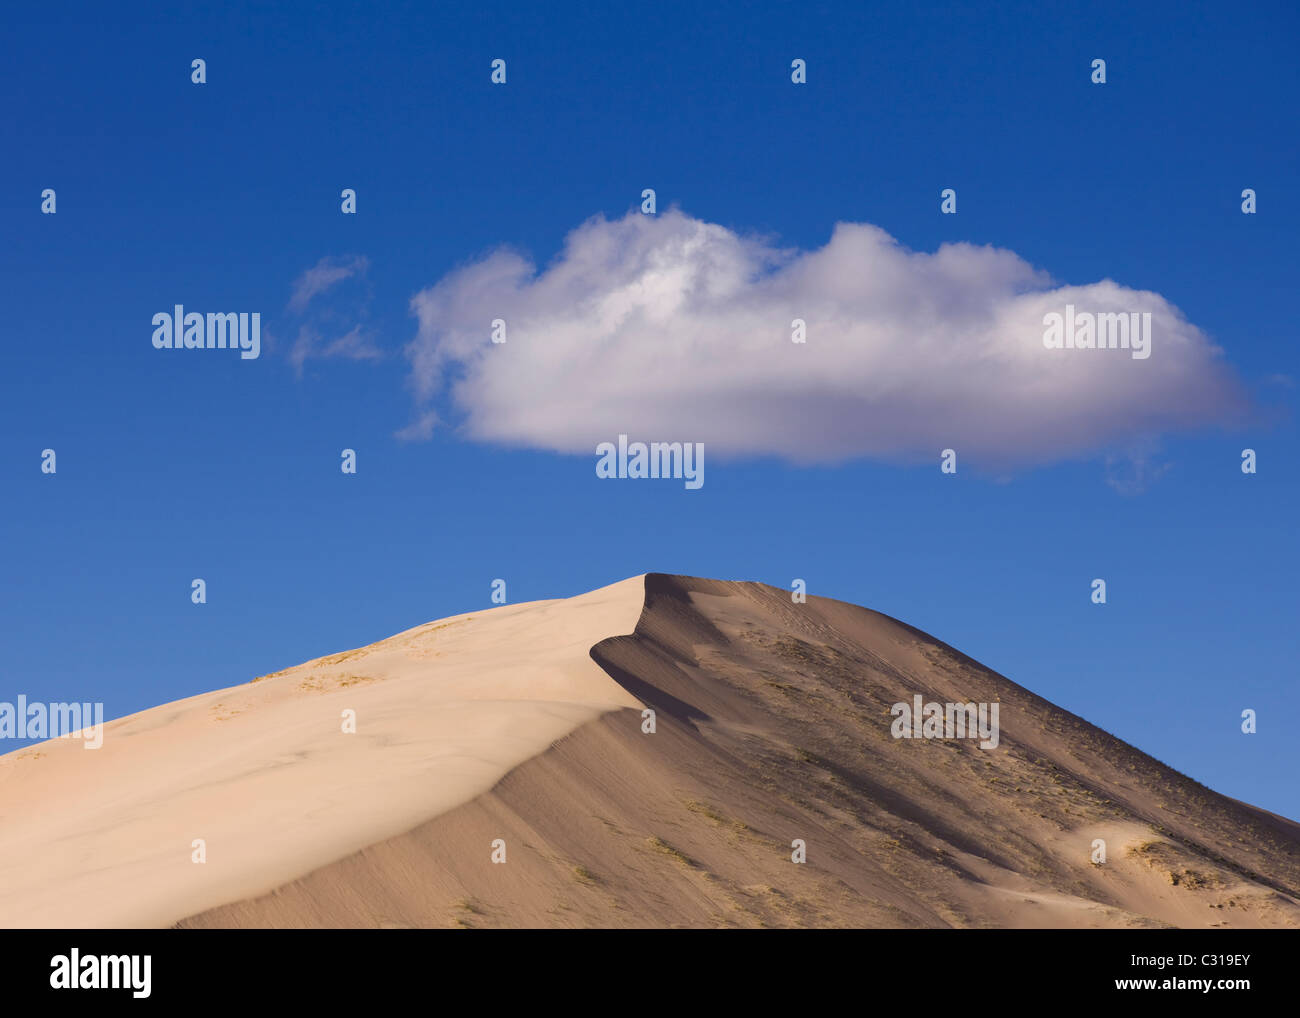 Cloud over desert sand dune - Kelso Dunes, Mojave desert, California USA Stock Photo